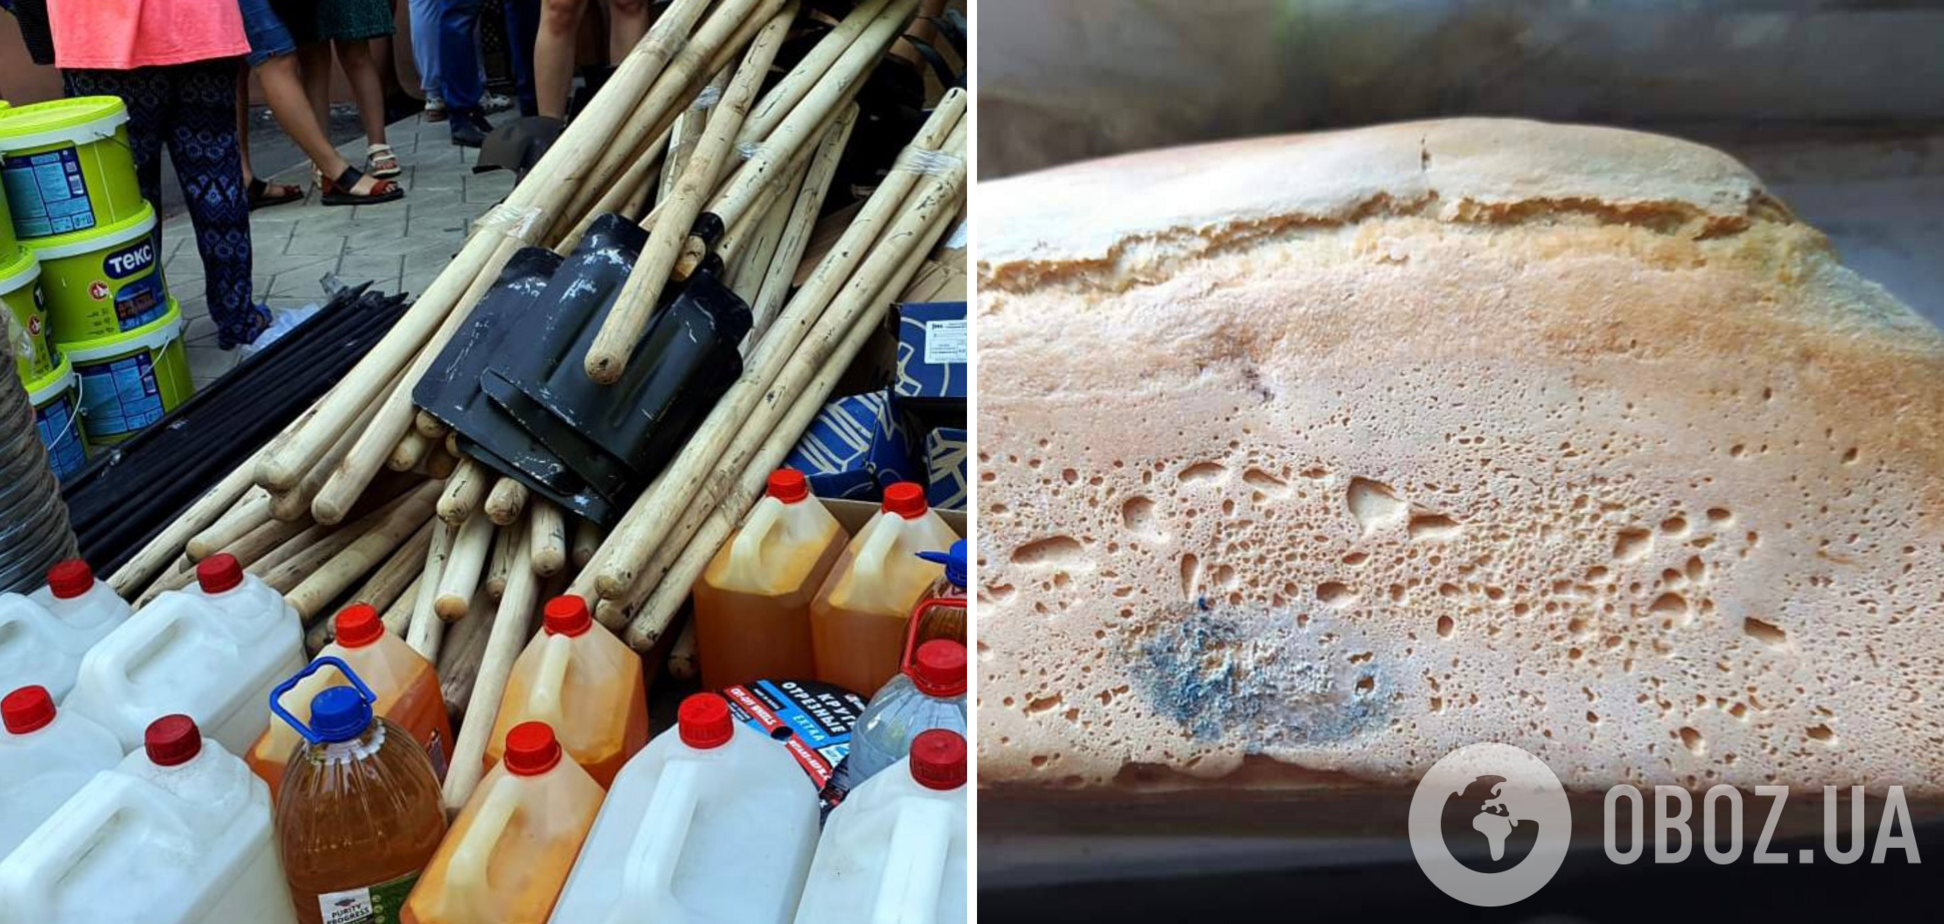 Хлеб с плесенью и тушенка из вымени: жителям Мариуполя прислали гуманитарную помощь от 'Единой России'. Фото